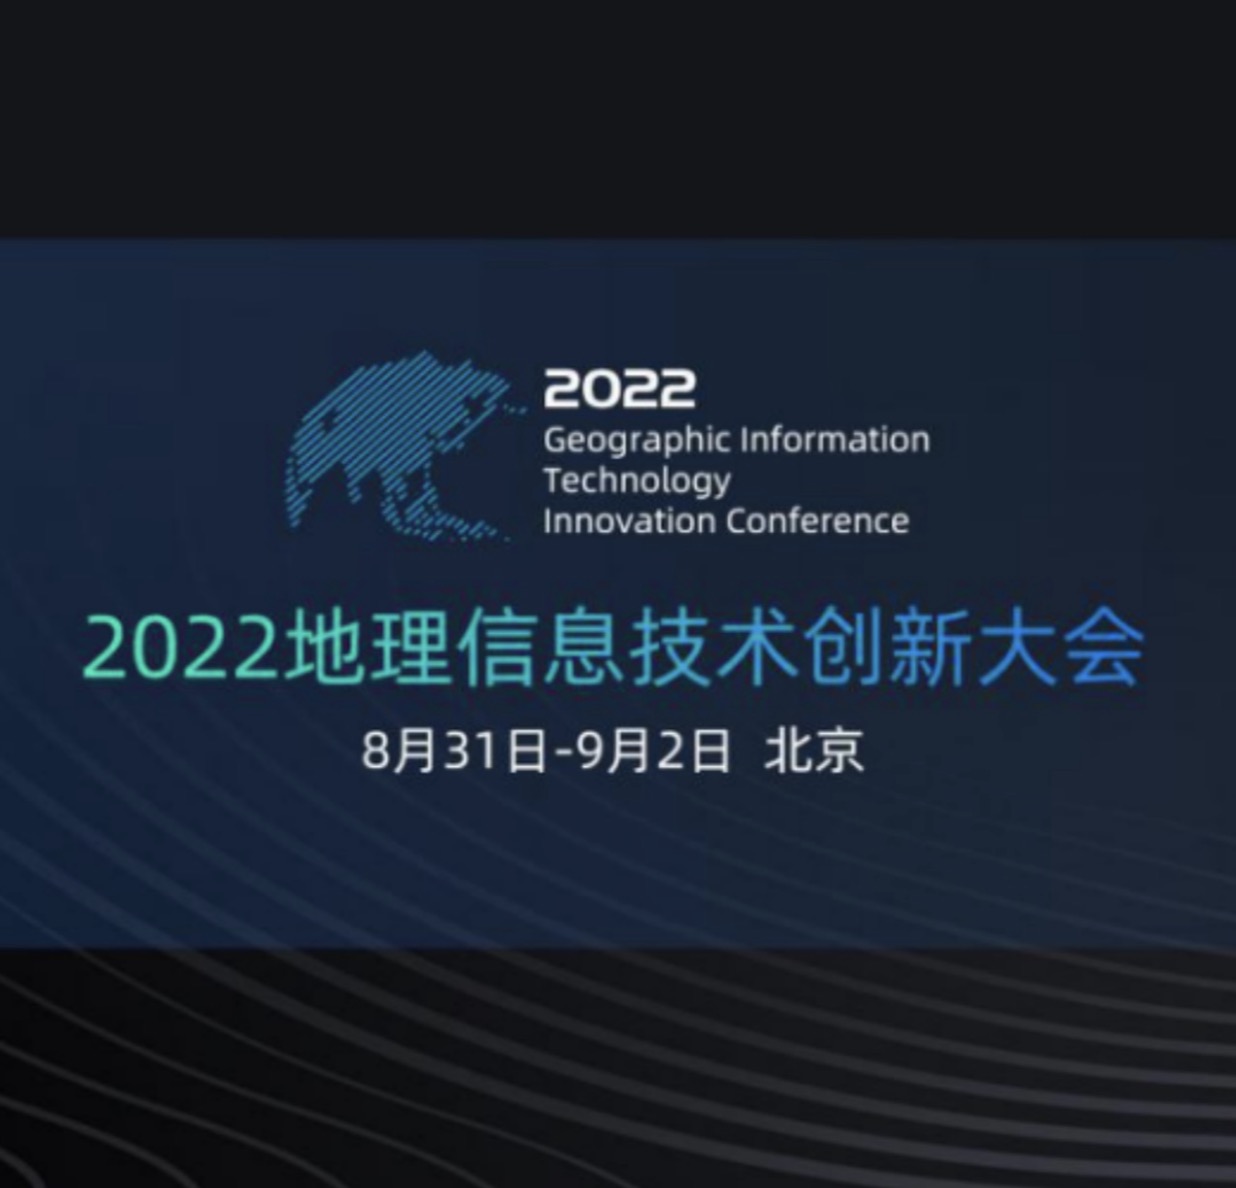 2022地理信息技术创新大会前瞻以创新赋能GIS行业发展